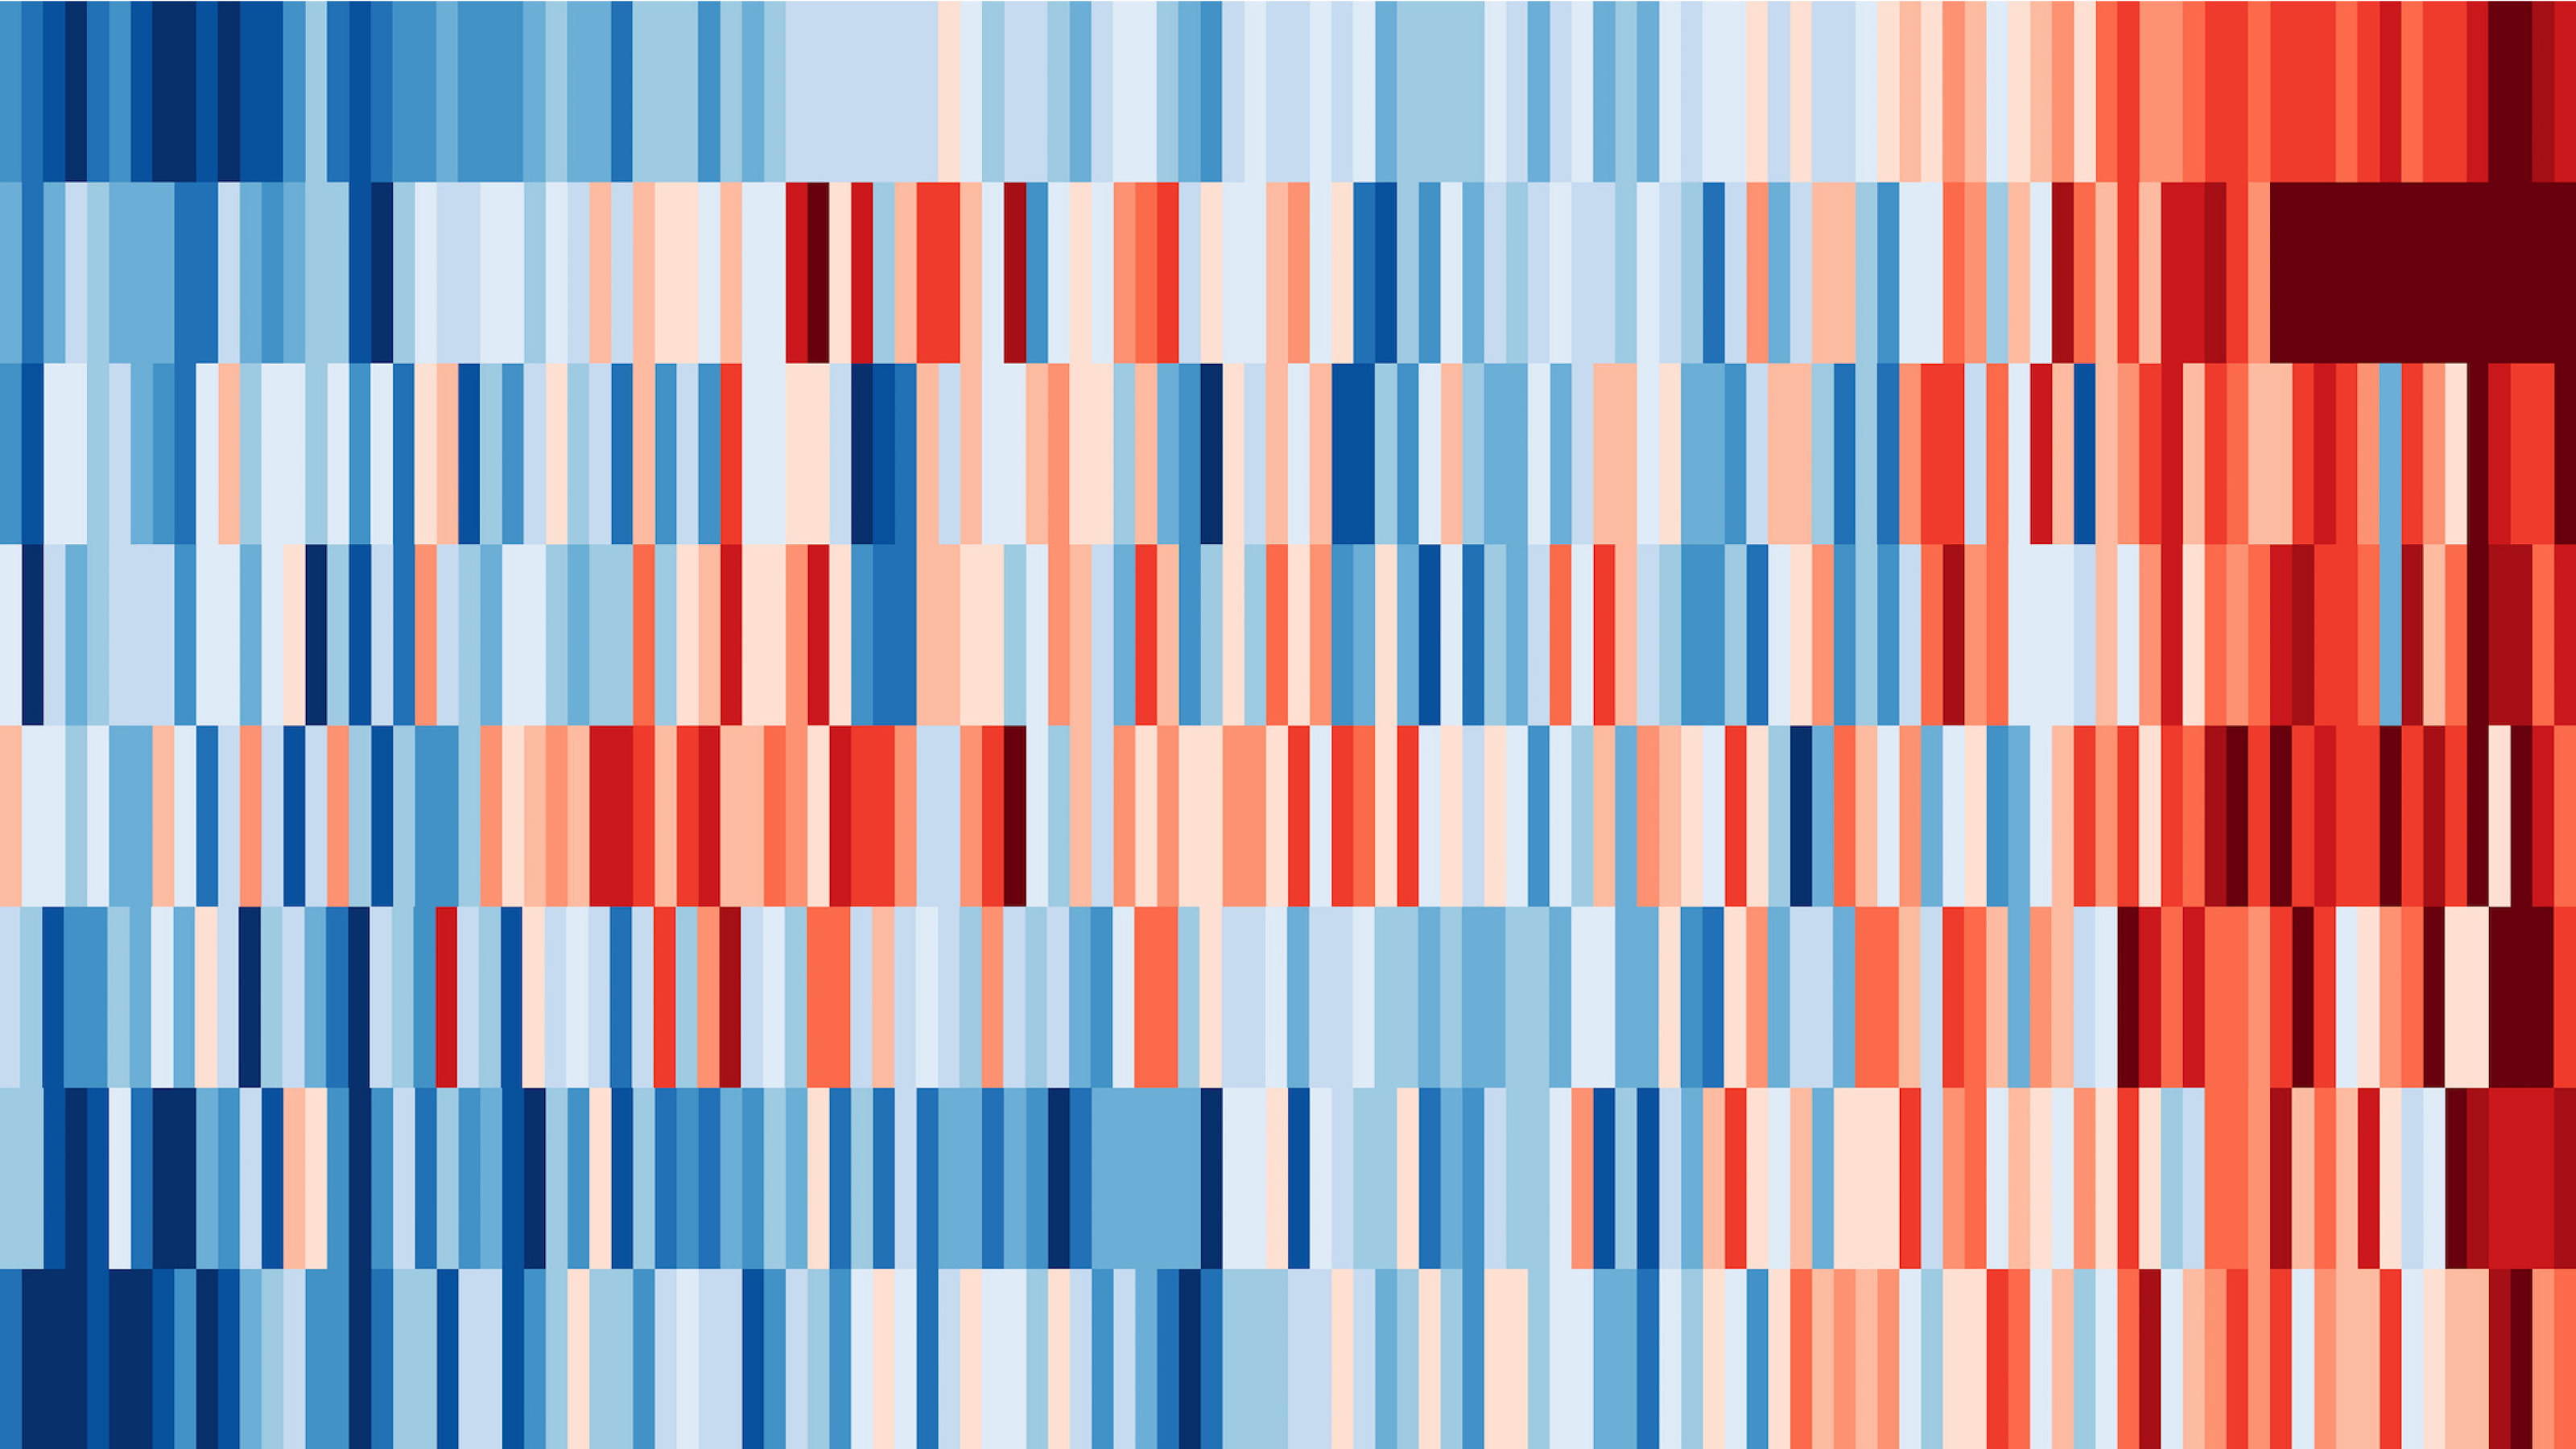 Eine Grafik mit vielen senkrechten blauen und roten Streifen, die in acht breiten, waagerechten Bändern angeordnet sind. – 
Warming Stripes 1901 bis 2018 für (von oben): die Welt, die Arktis, Deutschland, Norwegen, Grönland, die USA, Australien und Südafrika. Die Streifen haben jeweils eine eigene Farbskala.